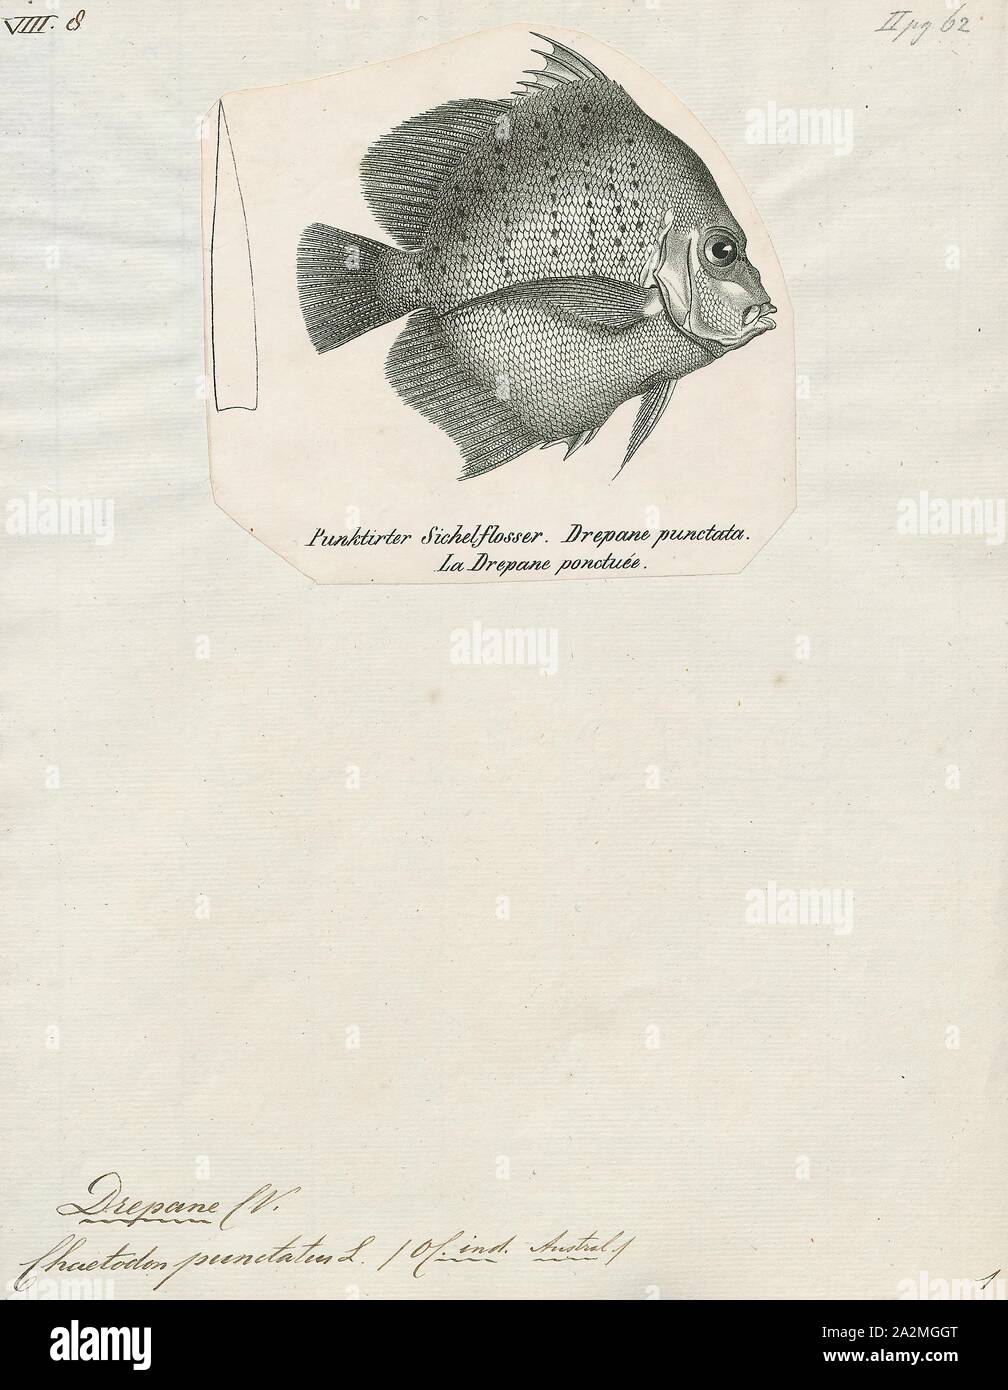 Drepane, Drucken, Drepane punctata punctata, allgemein bekannt als beschmutzt sicklefish, ist ein Fisch aus dem Indopazifik und Nordaustralien., 1700-1880 Stockfoto